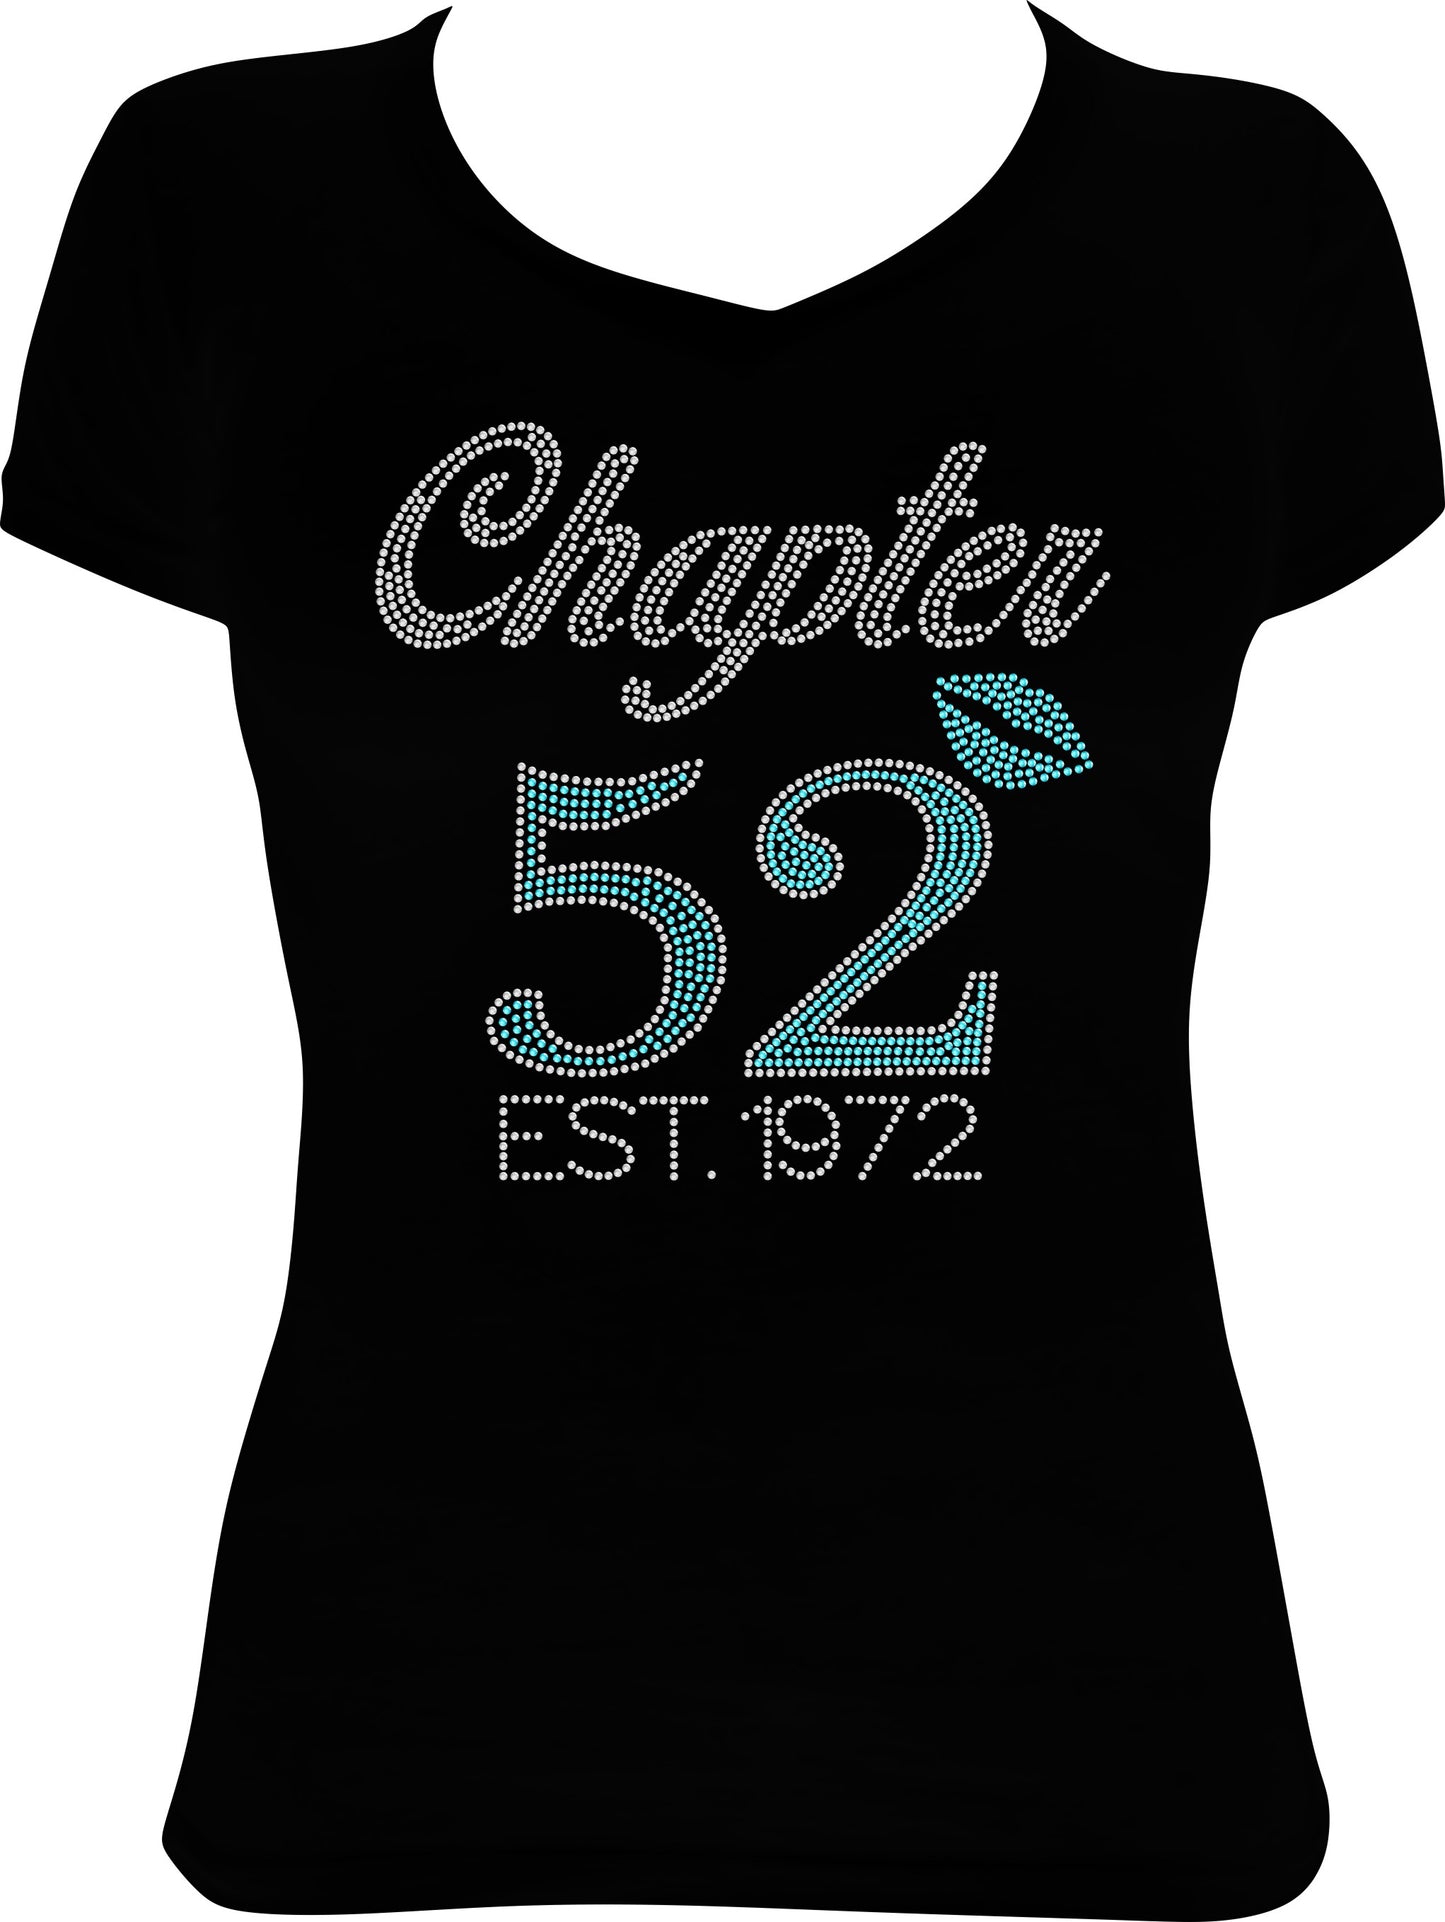 Chapter 52 Established 1972 Birthday Rhinestone Shirt